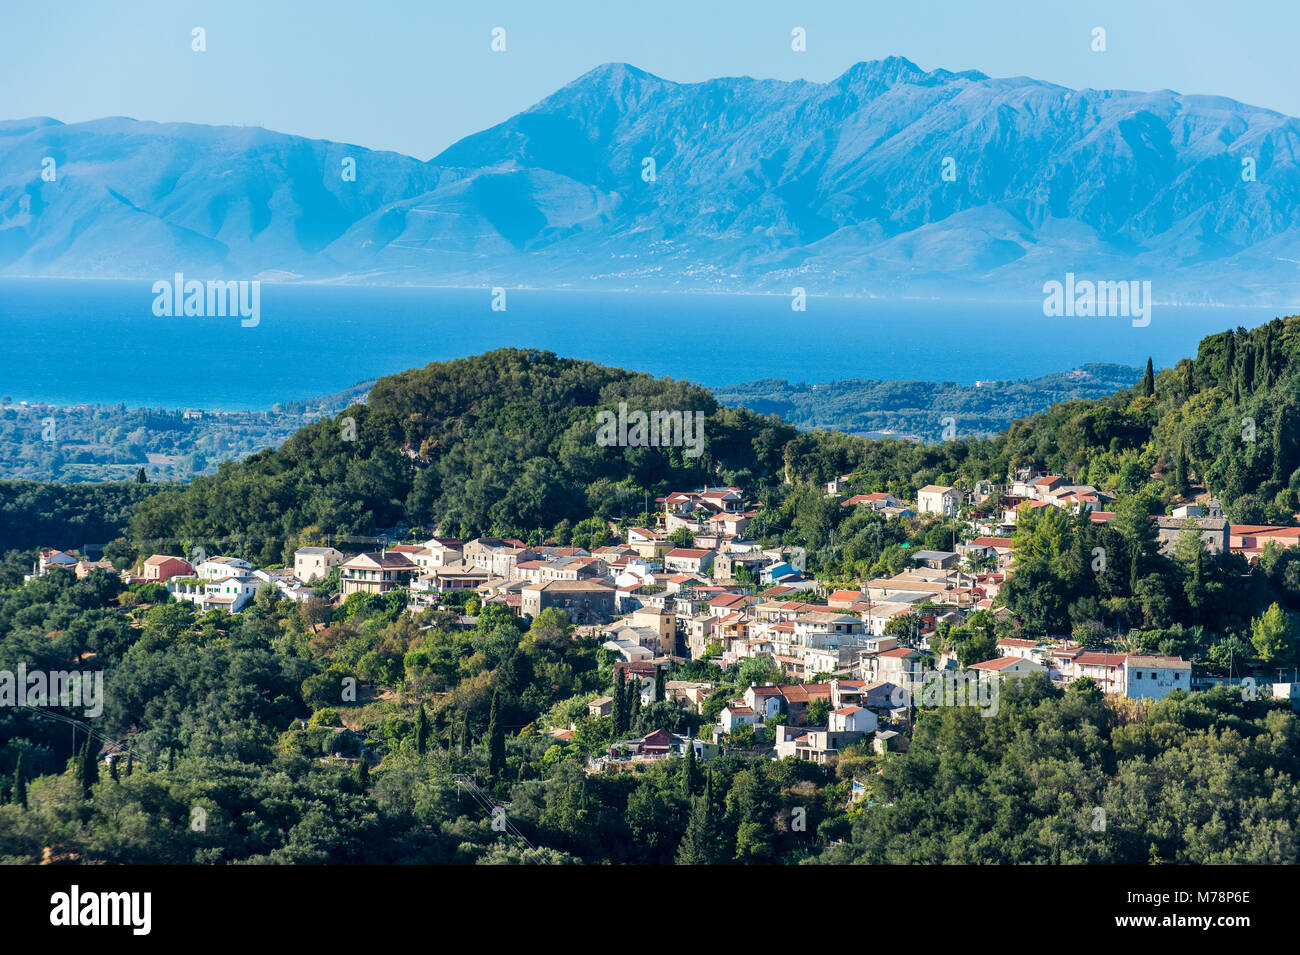 Petit village de montagne à l'intérieur, Corfou, îles Ioniennes, îles grecques, Grèce, Europe Banque D'Images